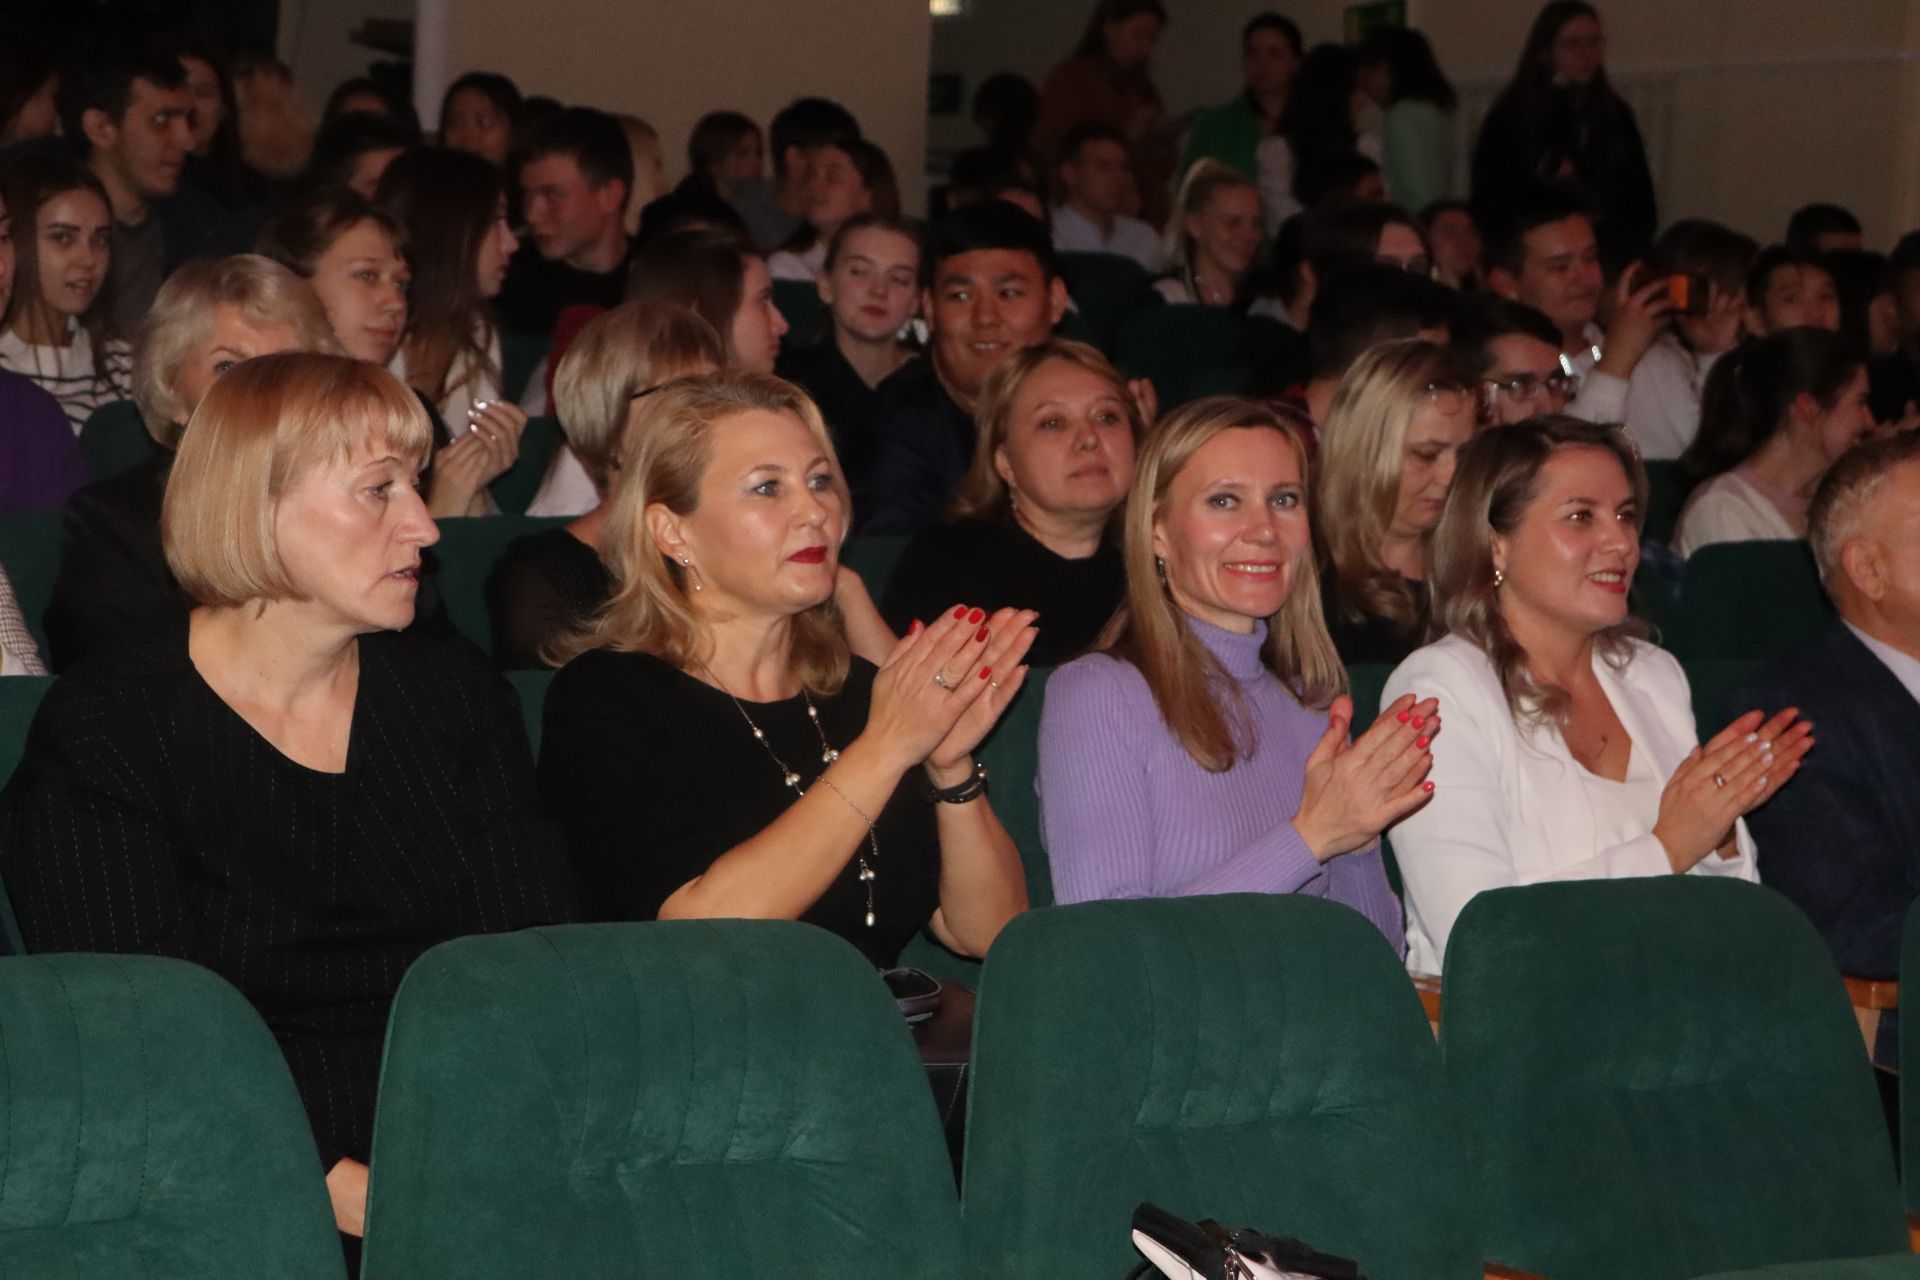 Чистопольские студенты отпраздновали День первокурсника (Фоторепортаж)